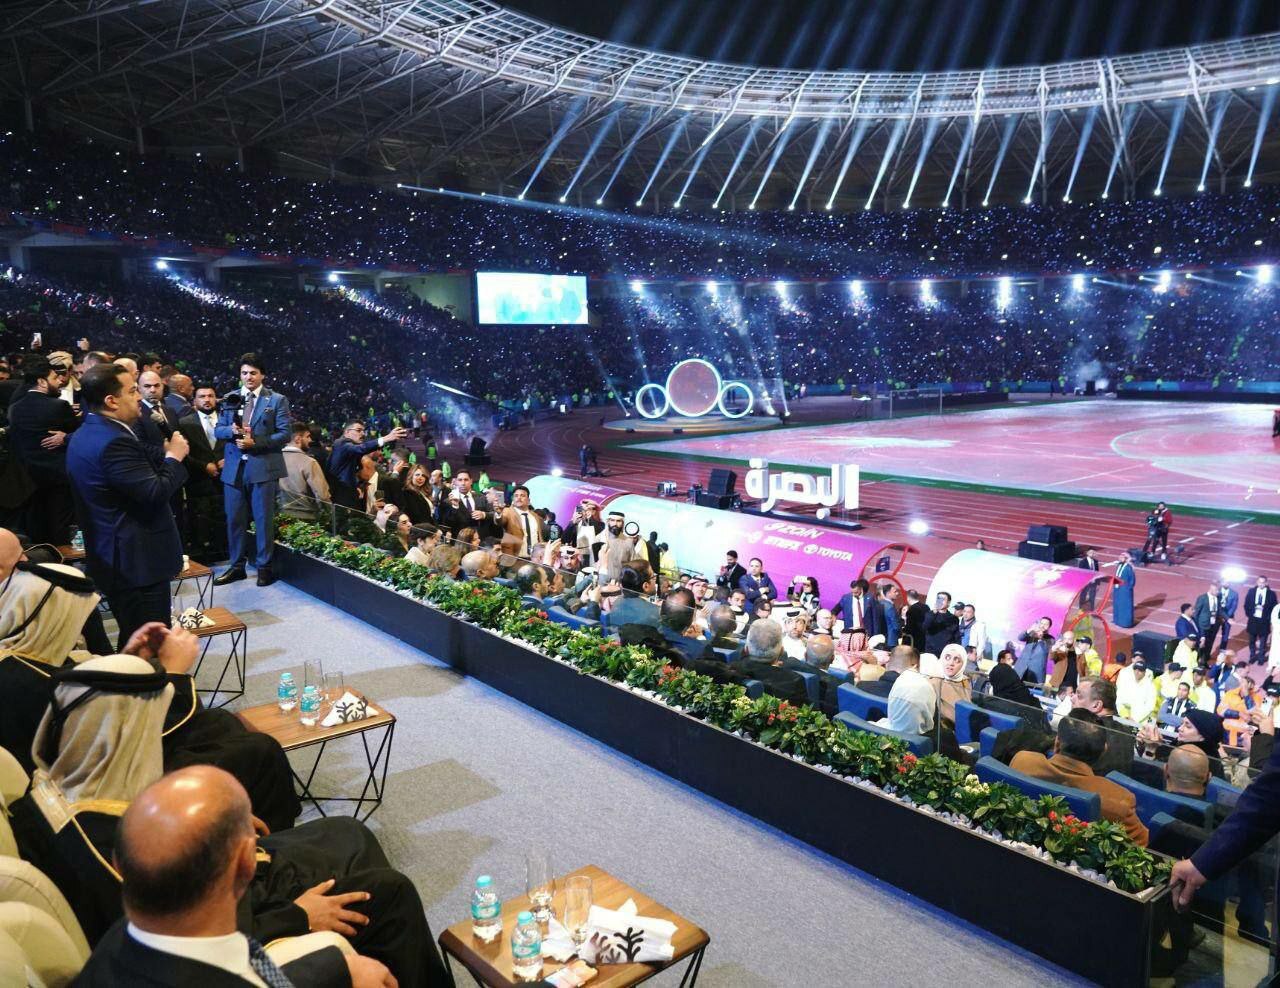 افتتاحیه لاکچری جام خلیج فارس در ورزشگاه بصره عراق!